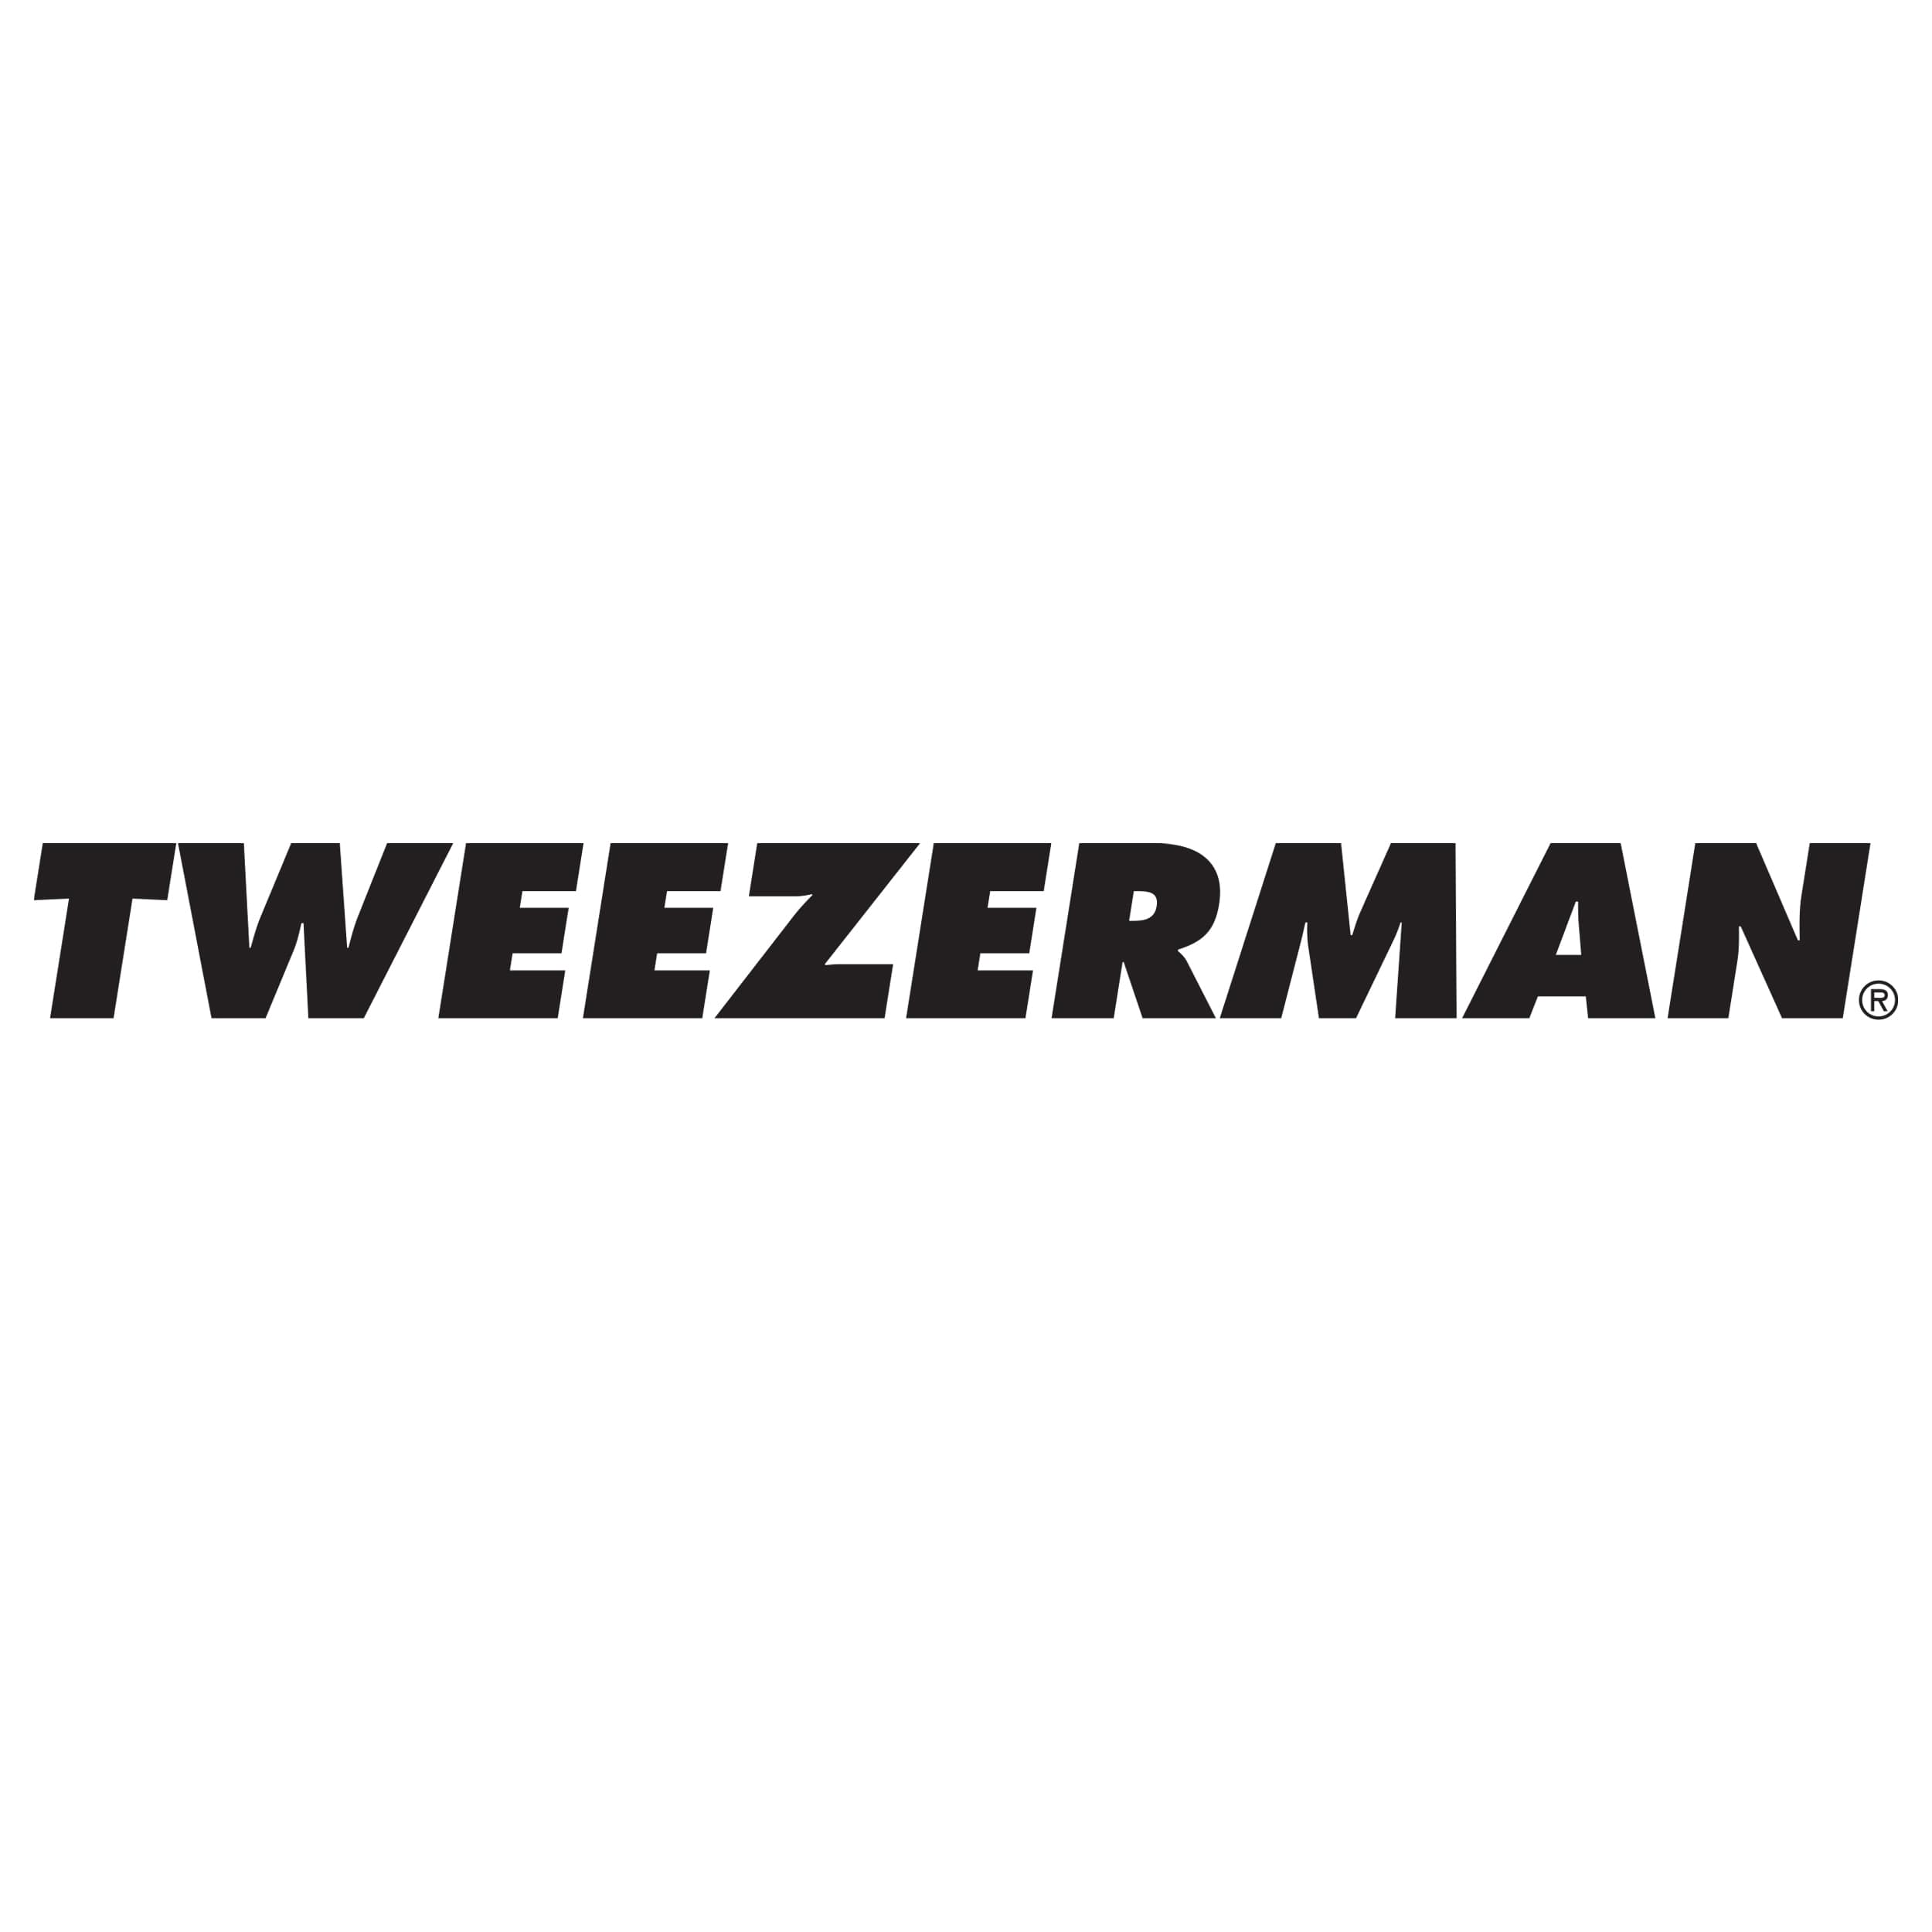 www.tweezerman.com